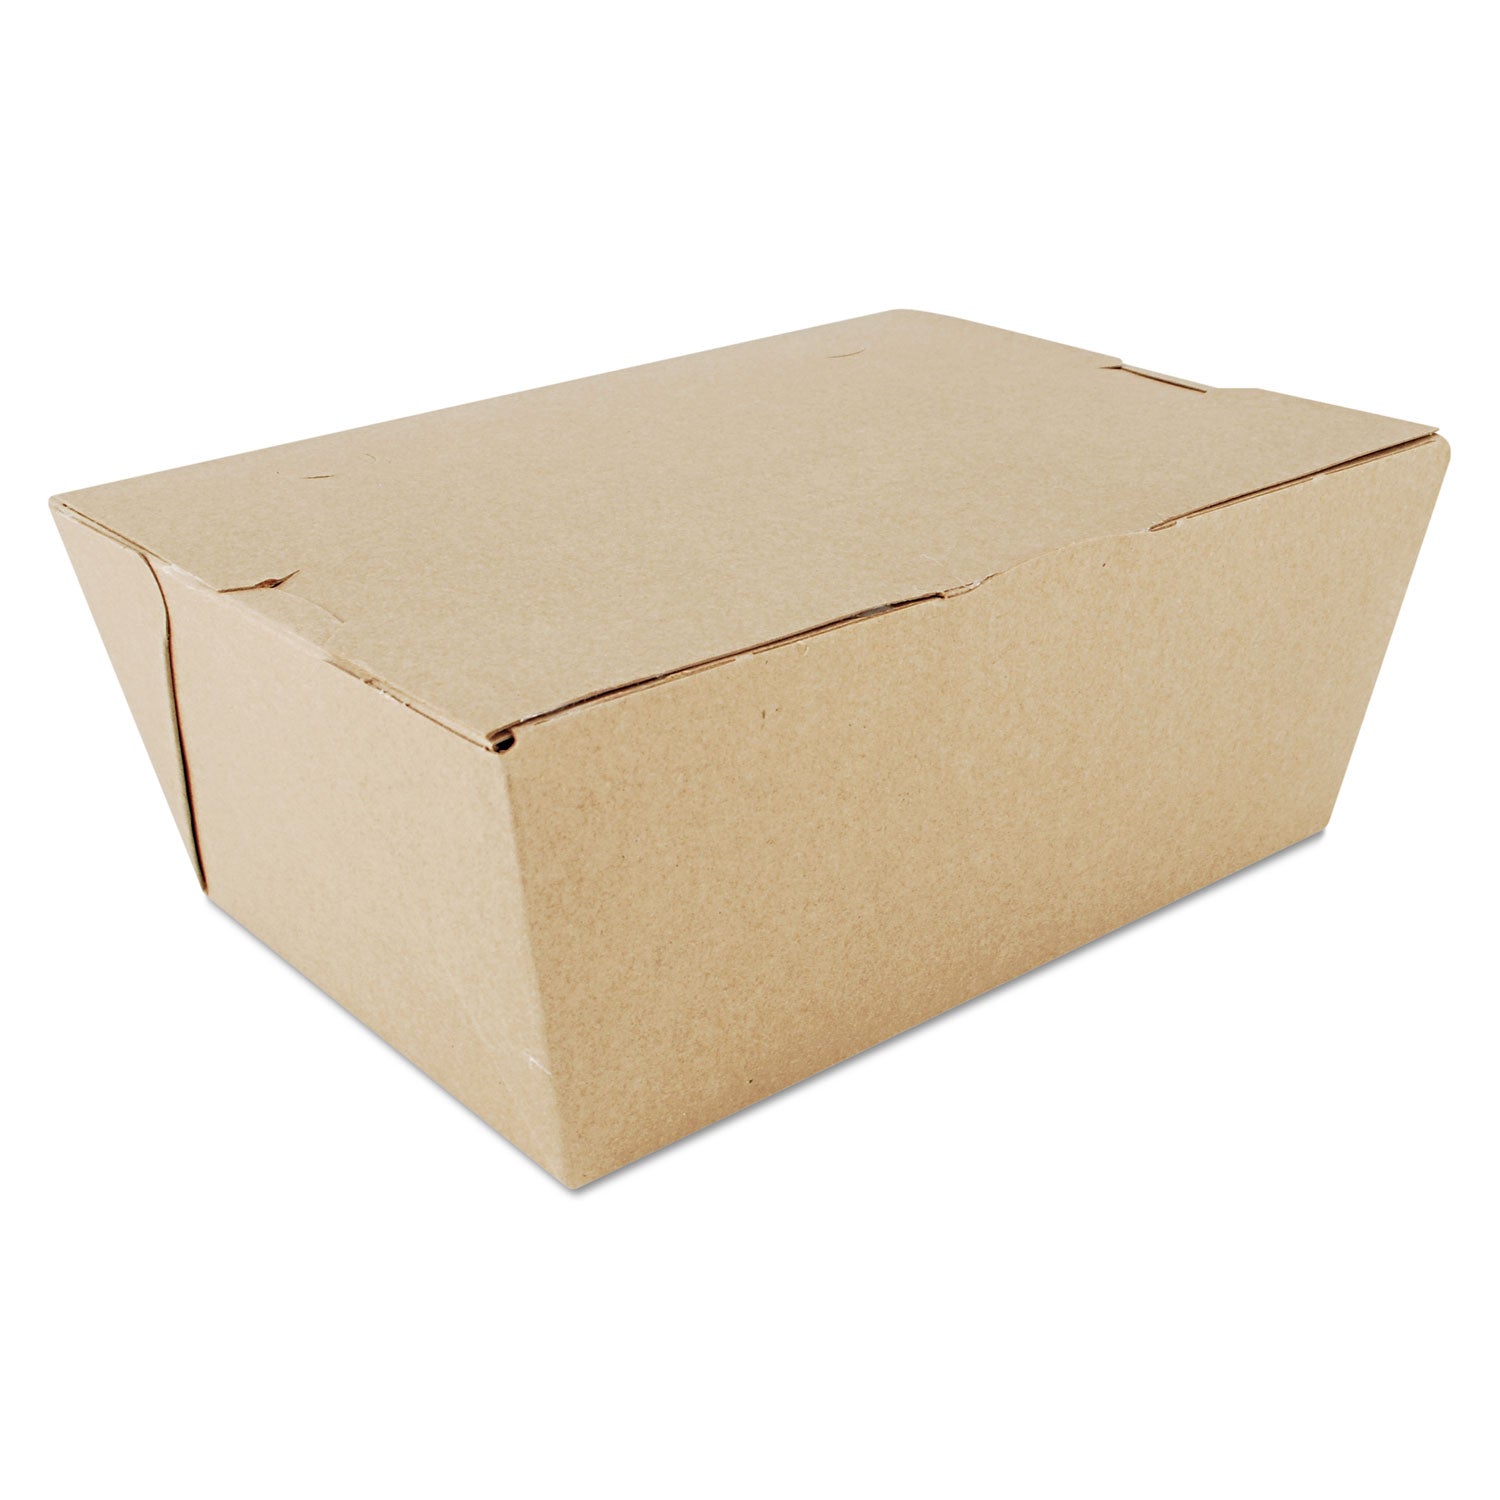 ChampPak Carryout Boxes, #4, 7.75 x 5.5 x 3.5, Kraft, Paper, 160/Carton - 